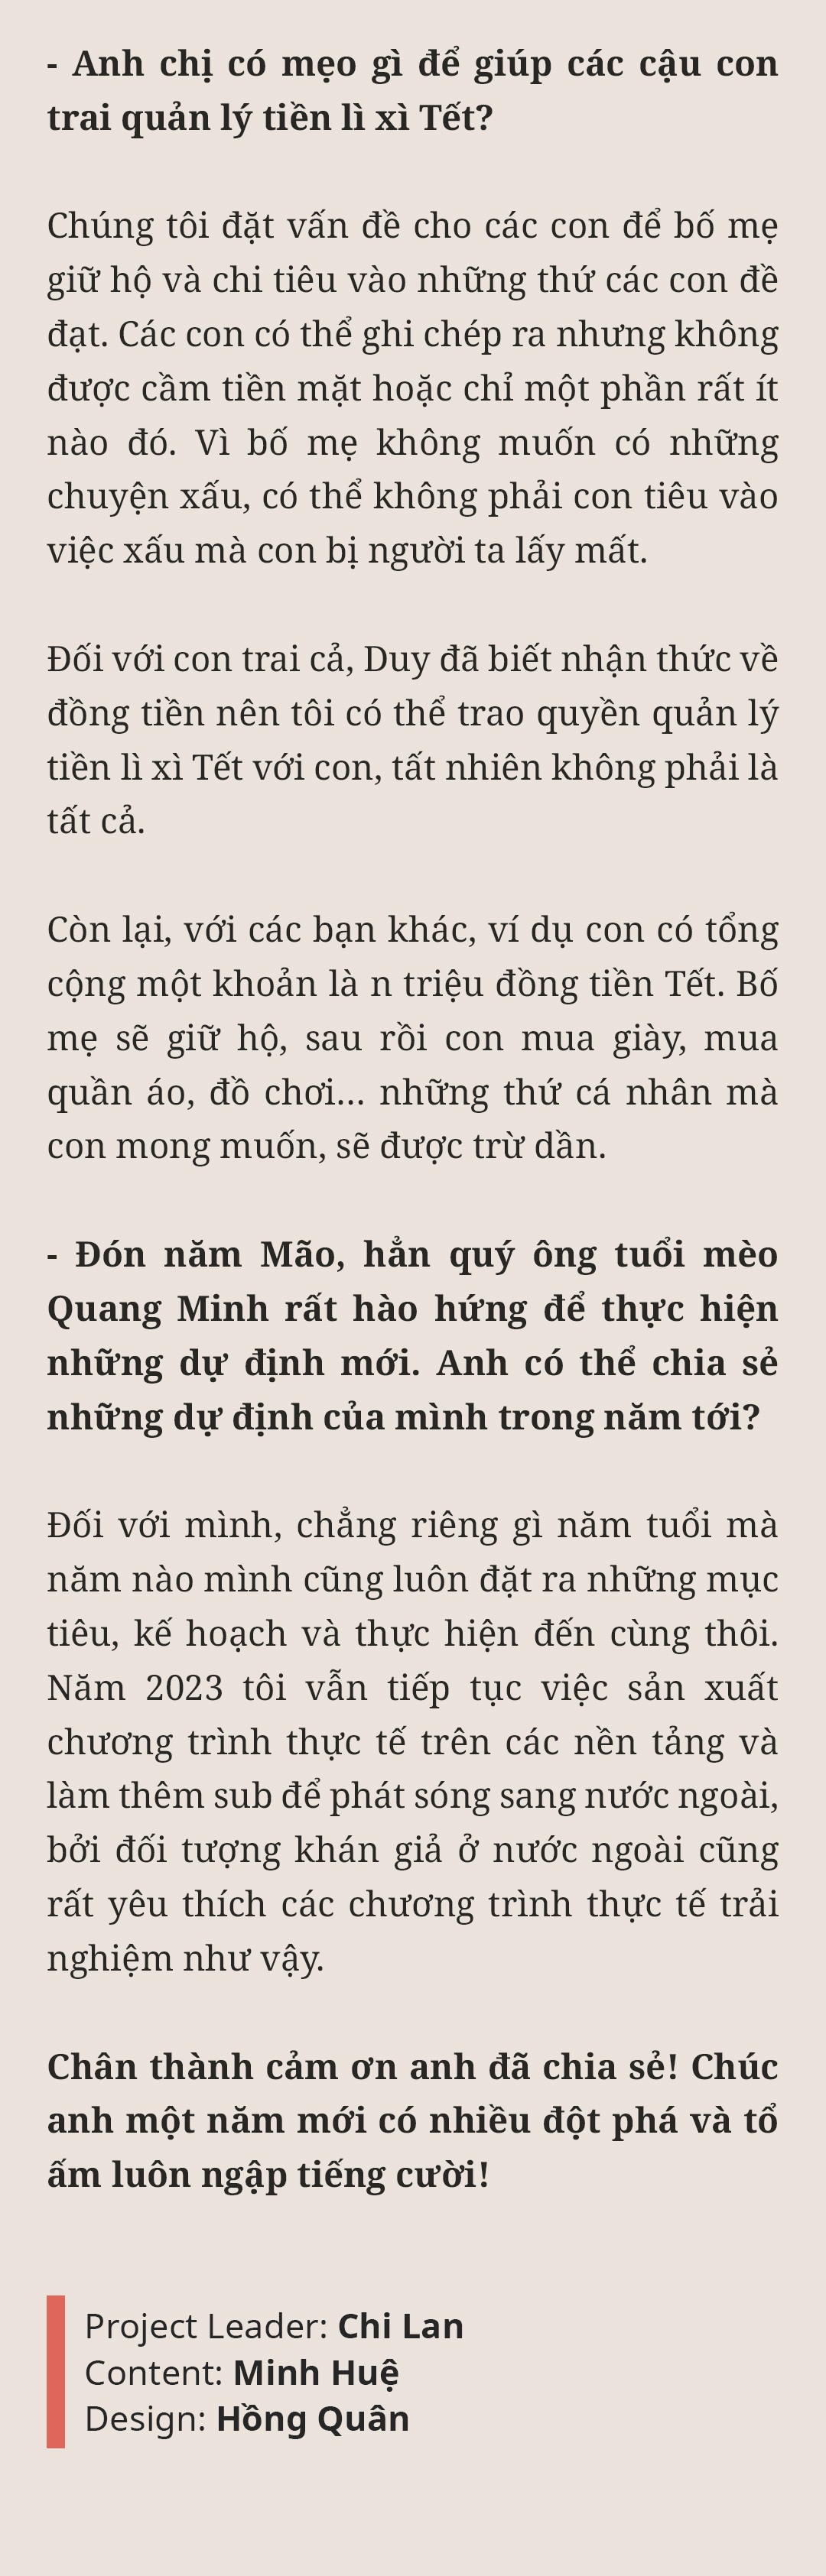 MC Trần Quang Minh: amp;#34;Nếu mừng tuổi ít, các con thấy buồn một thì mình tủi thân mườiamp;#34; - 36